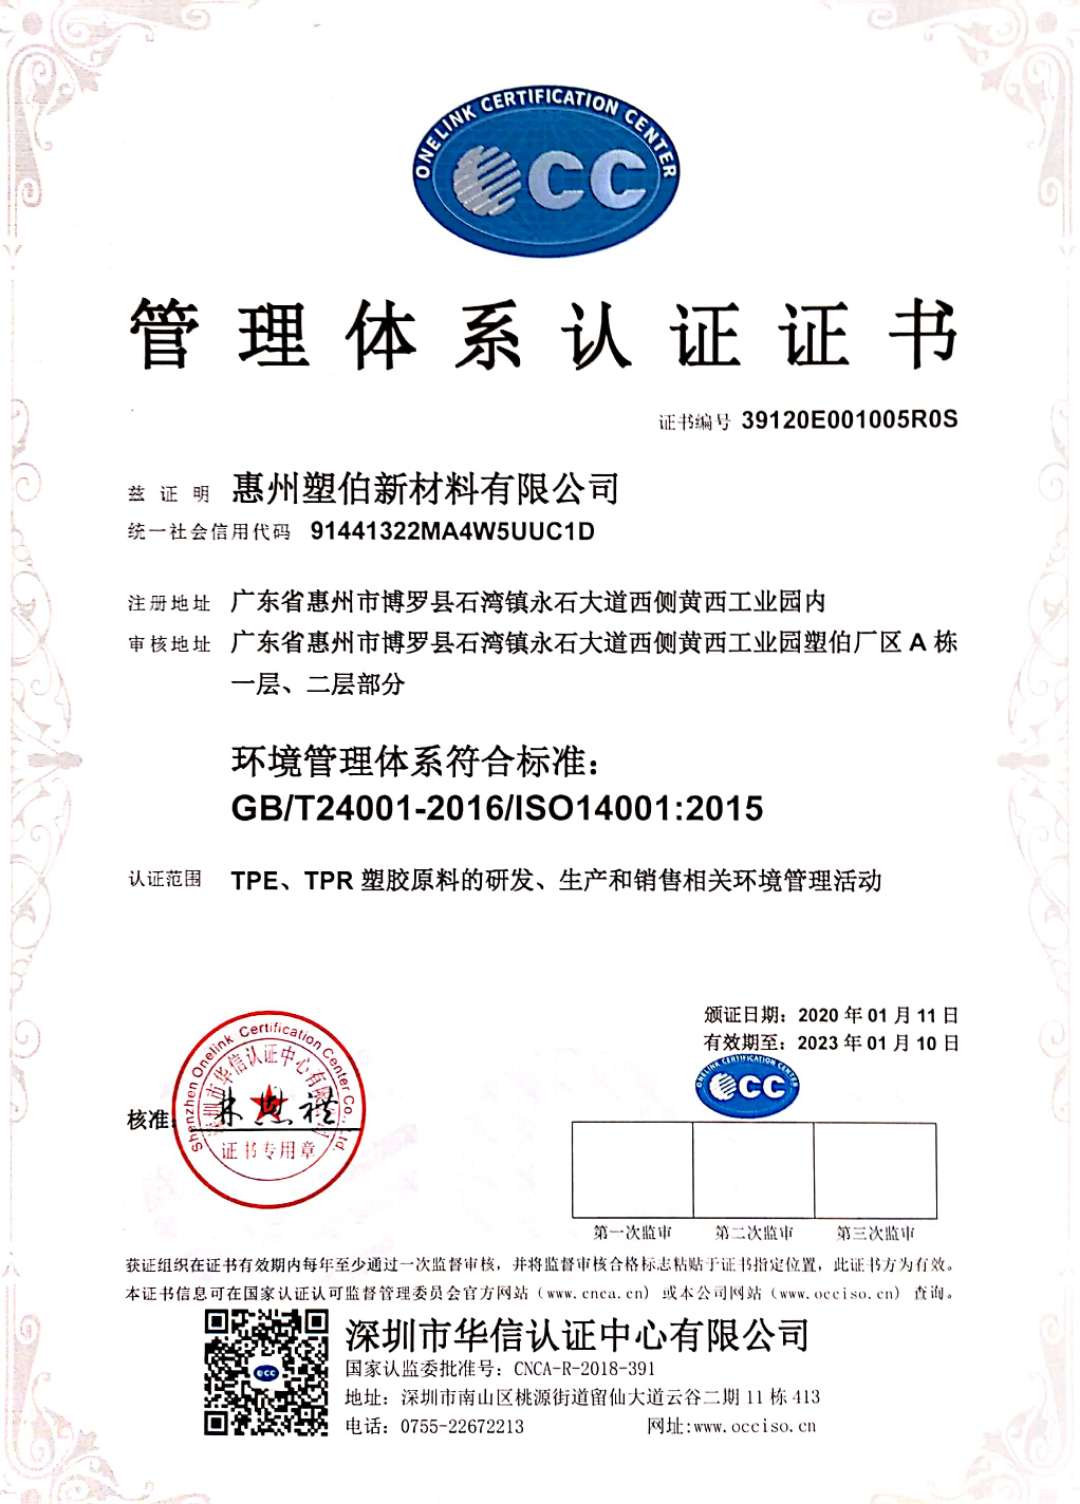 塑伯新材料ISO認證證書-中文版